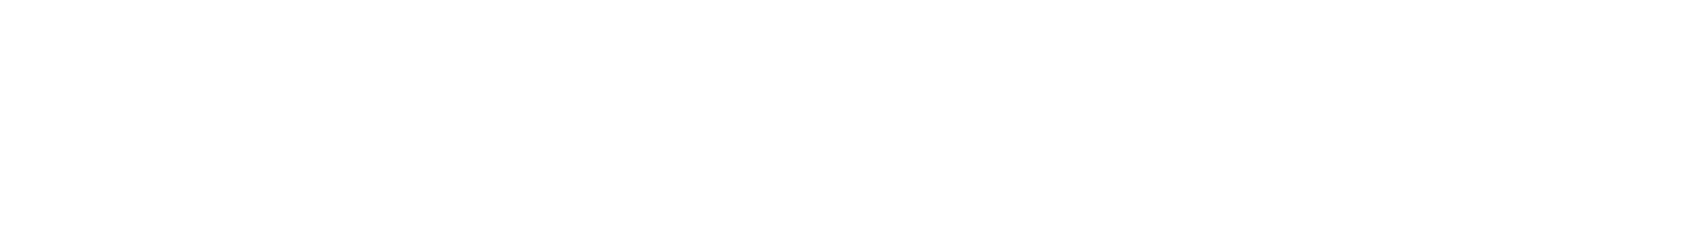 white elongated GMP logo